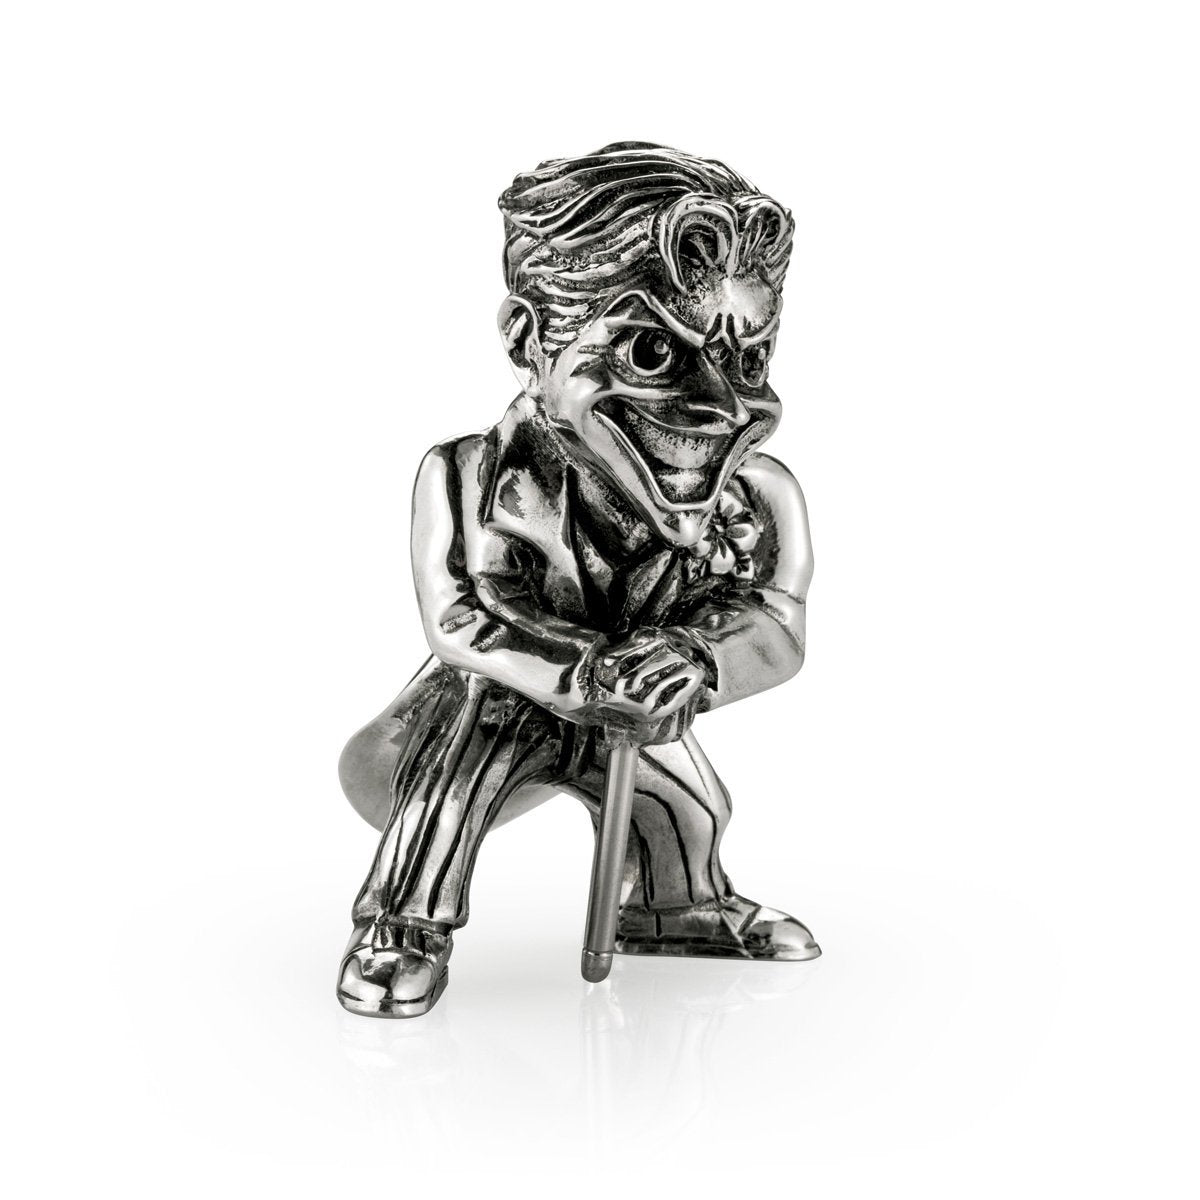 The Joker Bronze Age Miniature Figurine - DC Batman figure